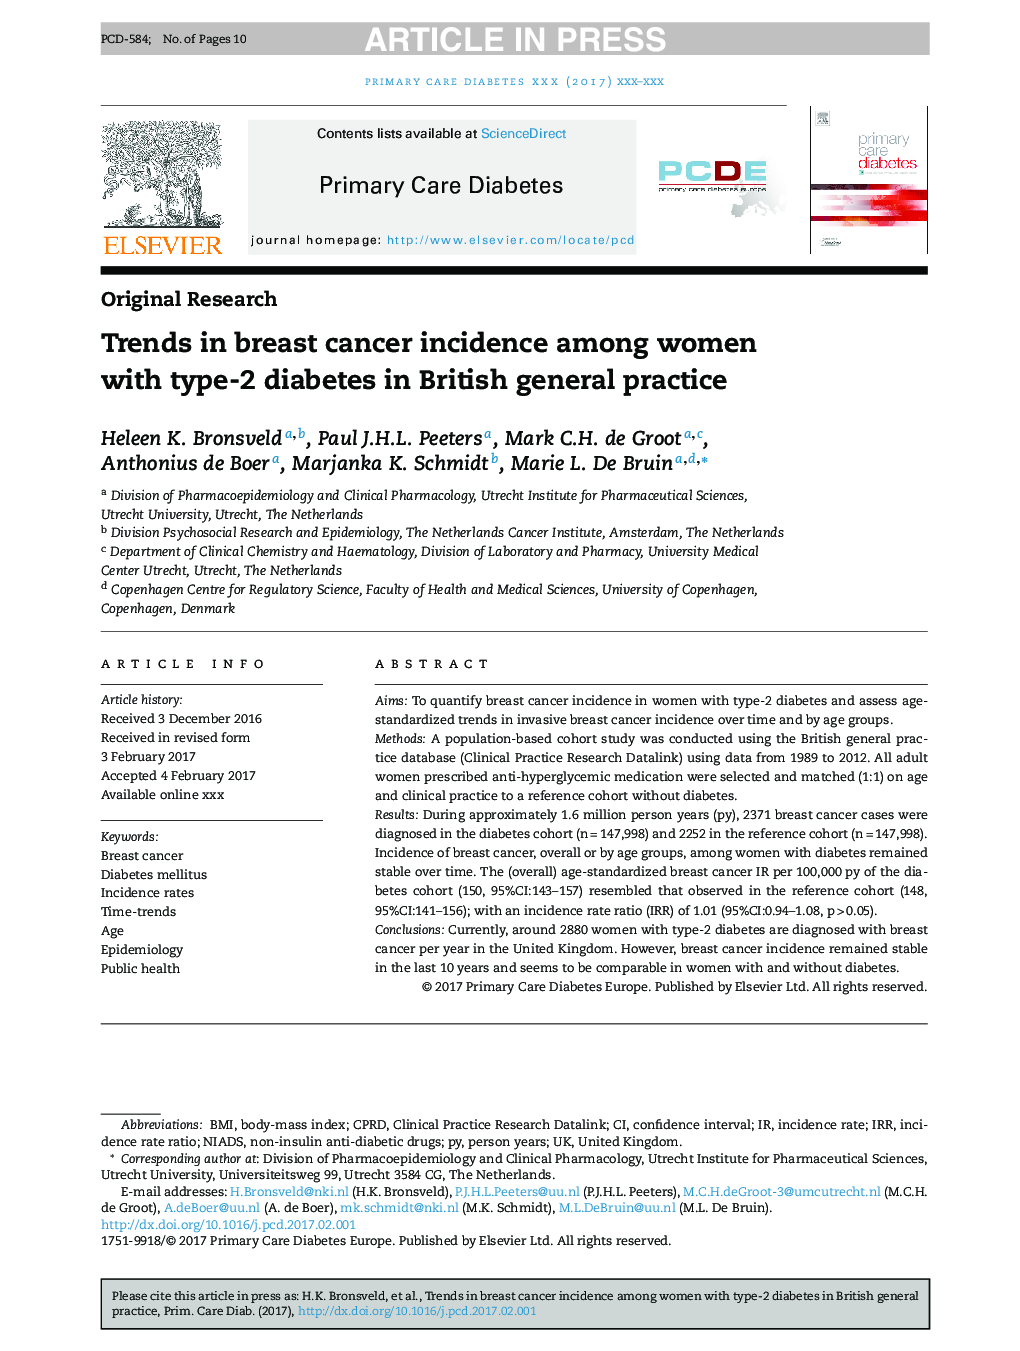 روند بروز سرطان پستان در زنان مبتلا به دیابت نوع 2 در تمرین عمومی بریتانیا 